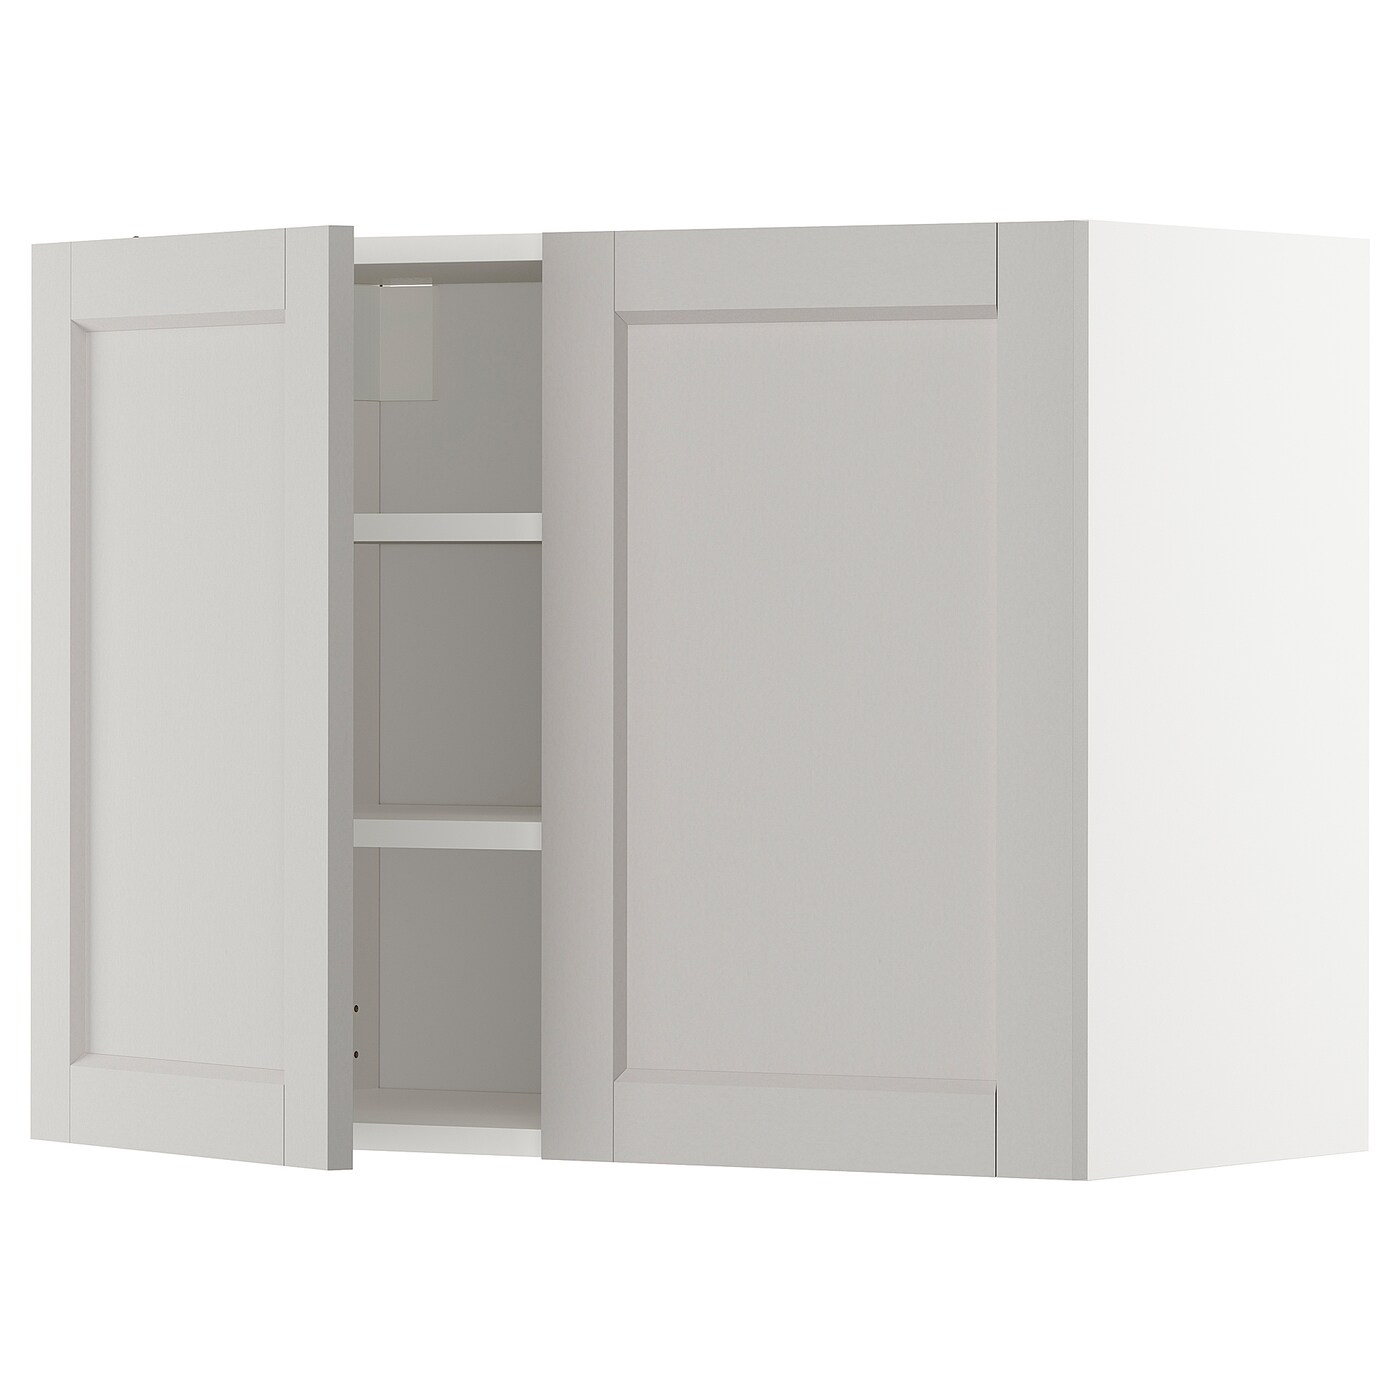 Навесной шкаф с полкой - METOD IKEA/ МЕТОД ИКЕА, 80х60 см, белый/светло-серый